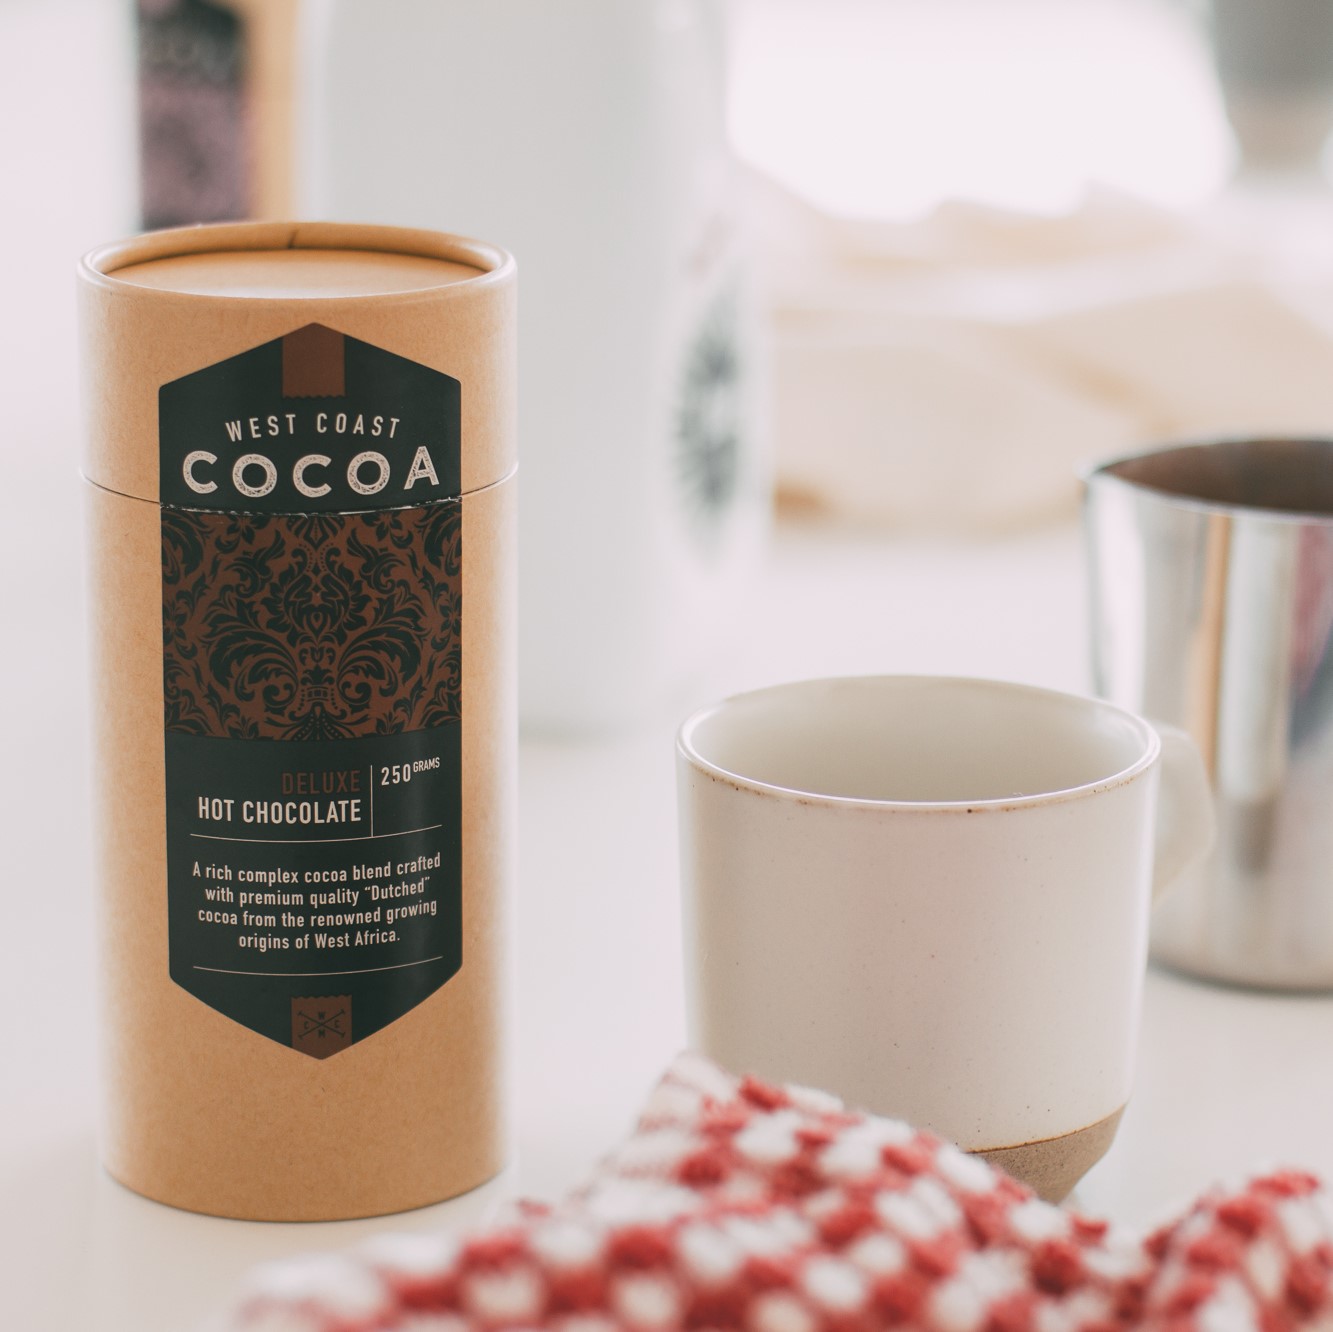 West Coast Cocoa Hot Chocolate